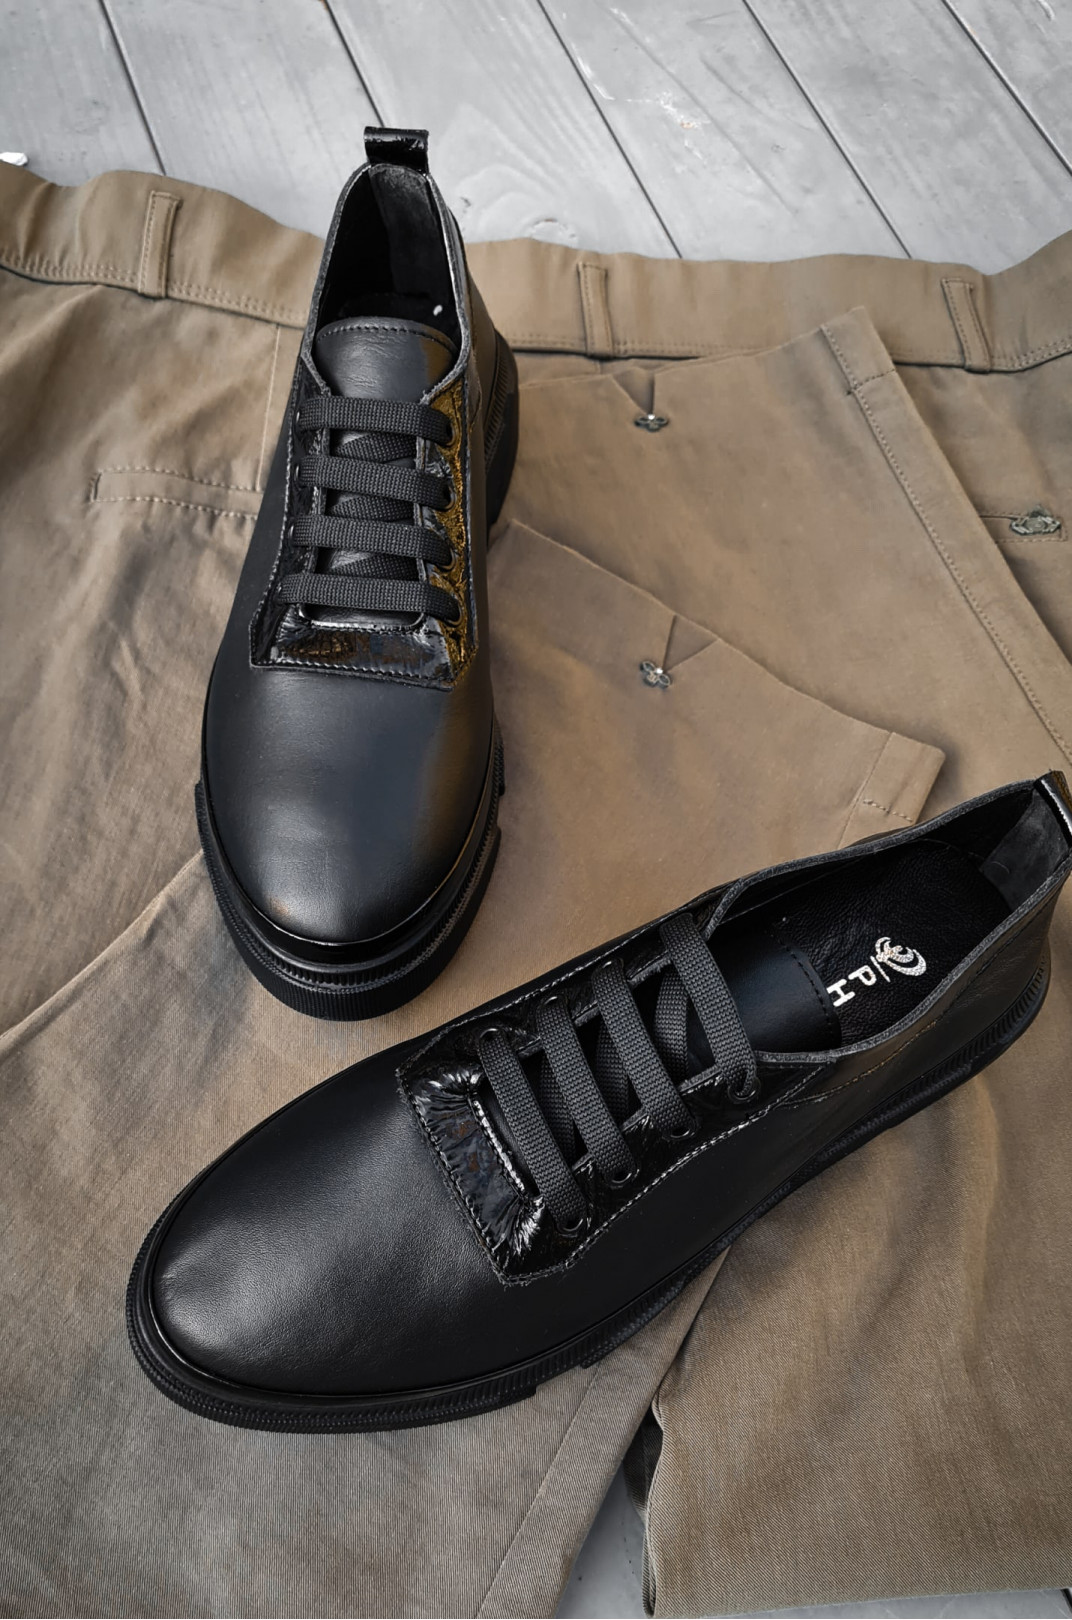 Удобные базовые кроссовки черная кожа больших размеров